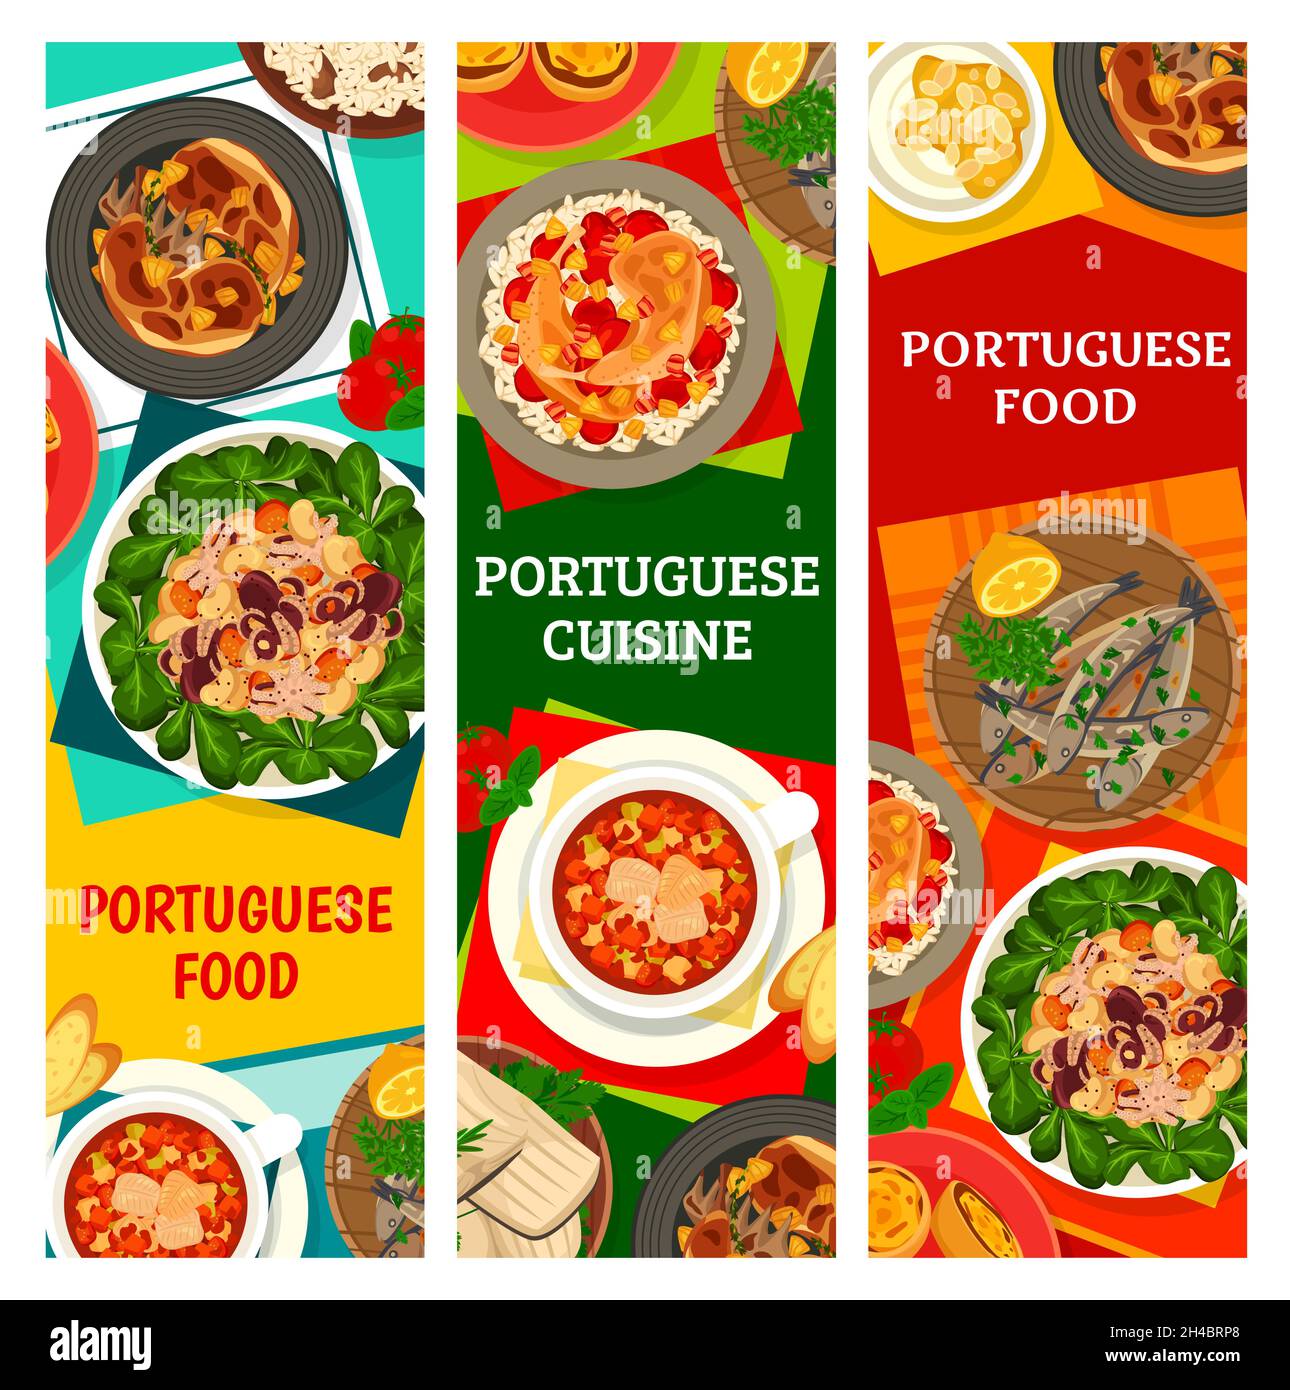 Portugiesische Küche Mahlzeiten, Restaurant Gerichte Banner. Octopus-Salat, Puddingtörtchen und gegrillte Sardinen, Huhn mit Piri Piri-Sauce, gebratenes Kaninchen und Stock Vektor